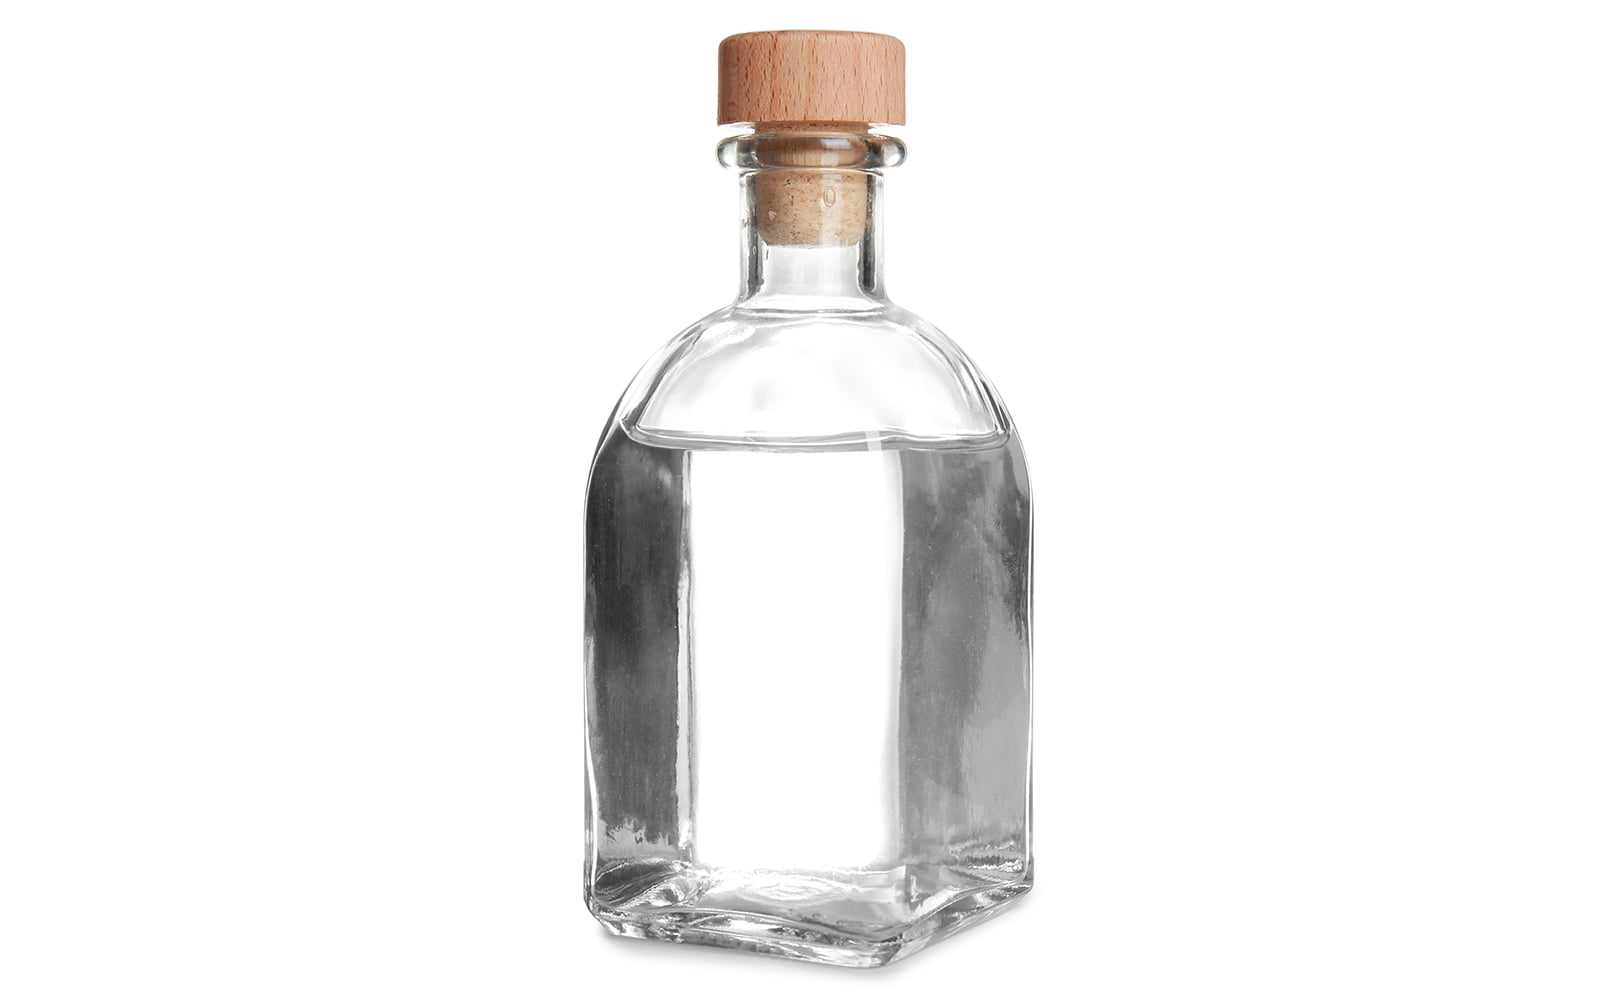 Glass bottle with vinegar